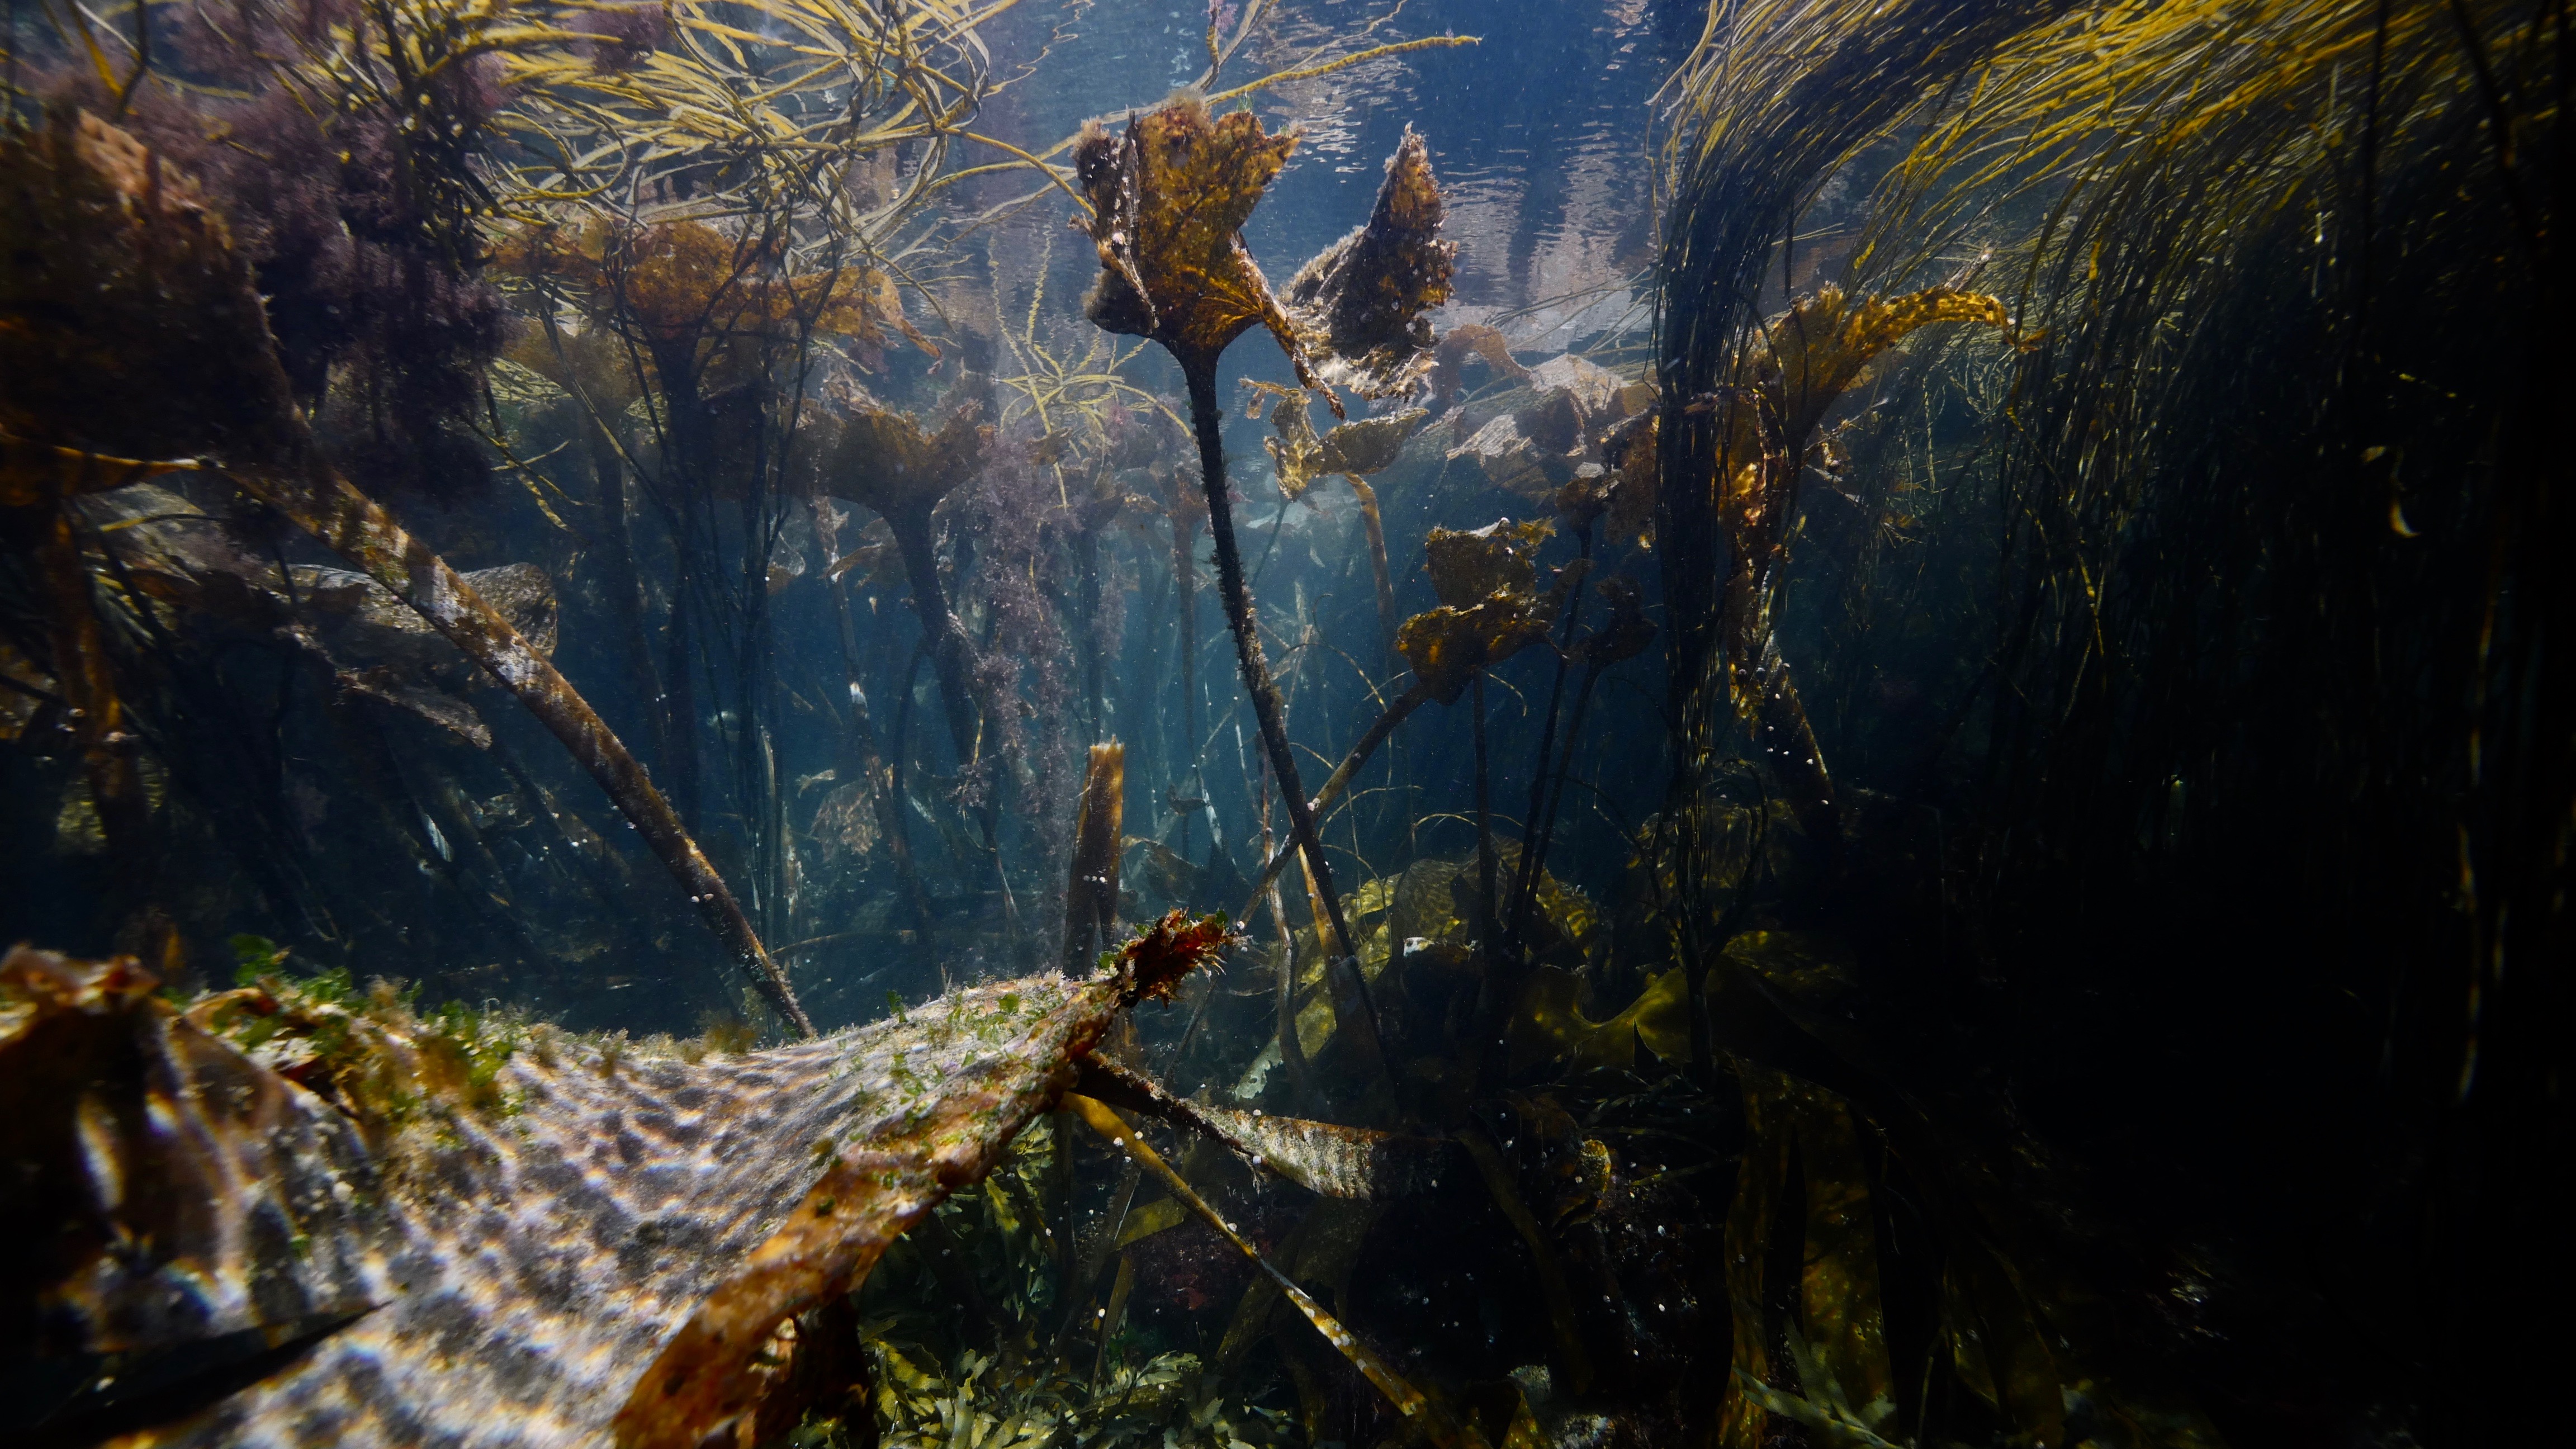 Underwater forest